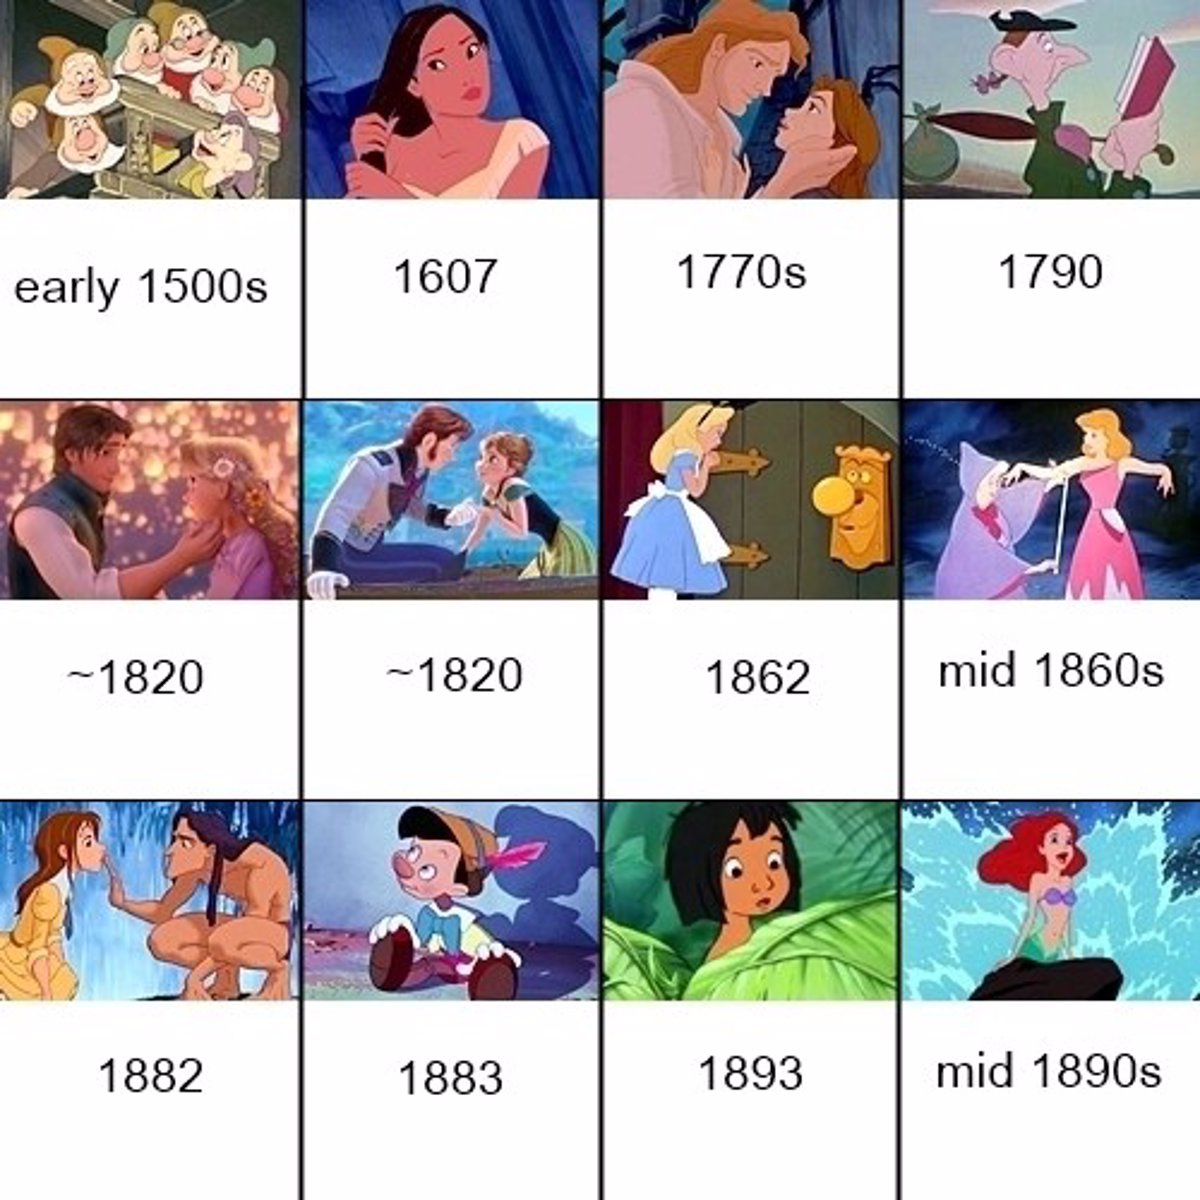 El 'timeline' de las películas Disney